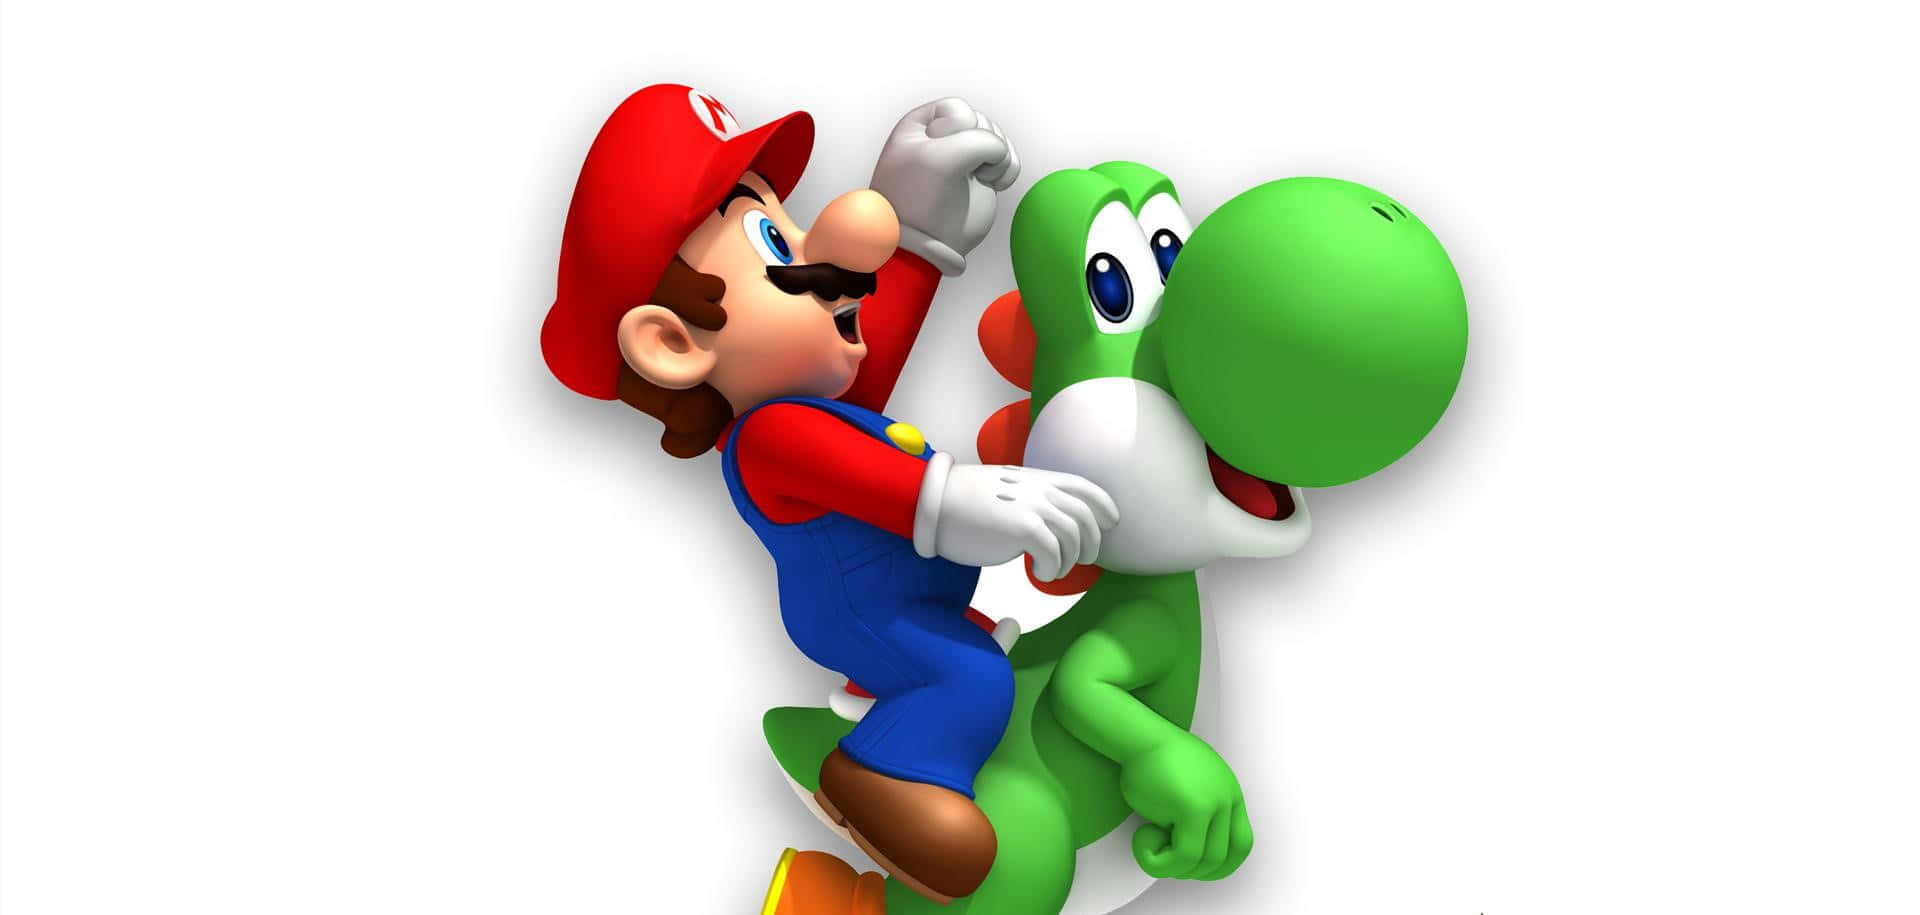 Let'sa Go! Mario and Luigi Ready for Adventure